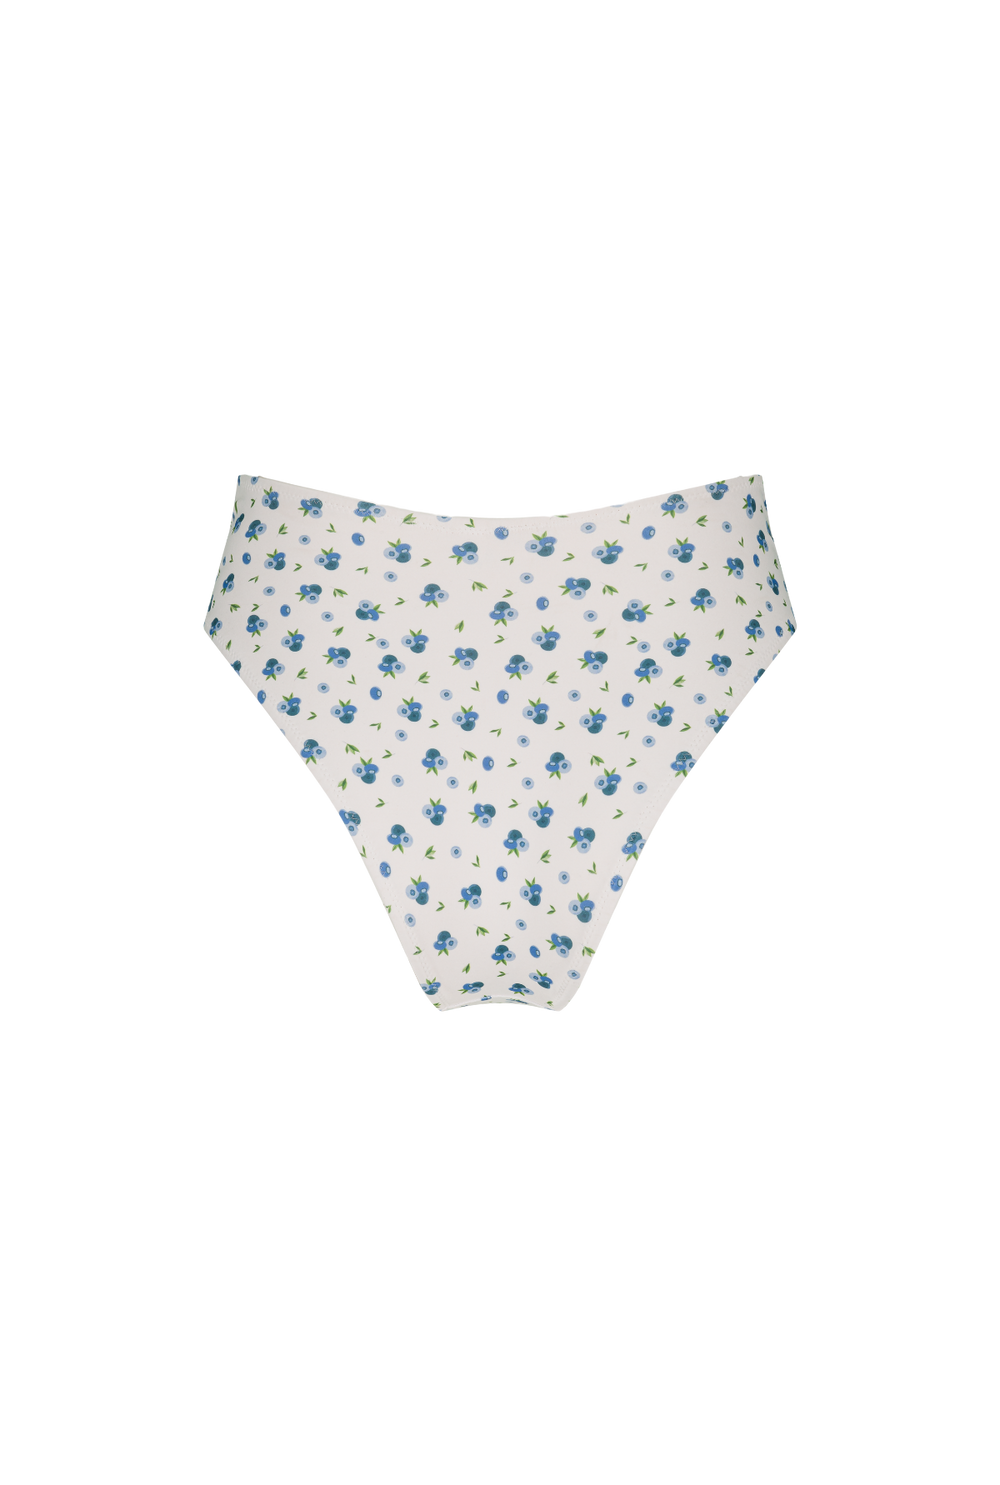 Hirola bikini bottom - Blueberry print - Nenes - Nénés Paris